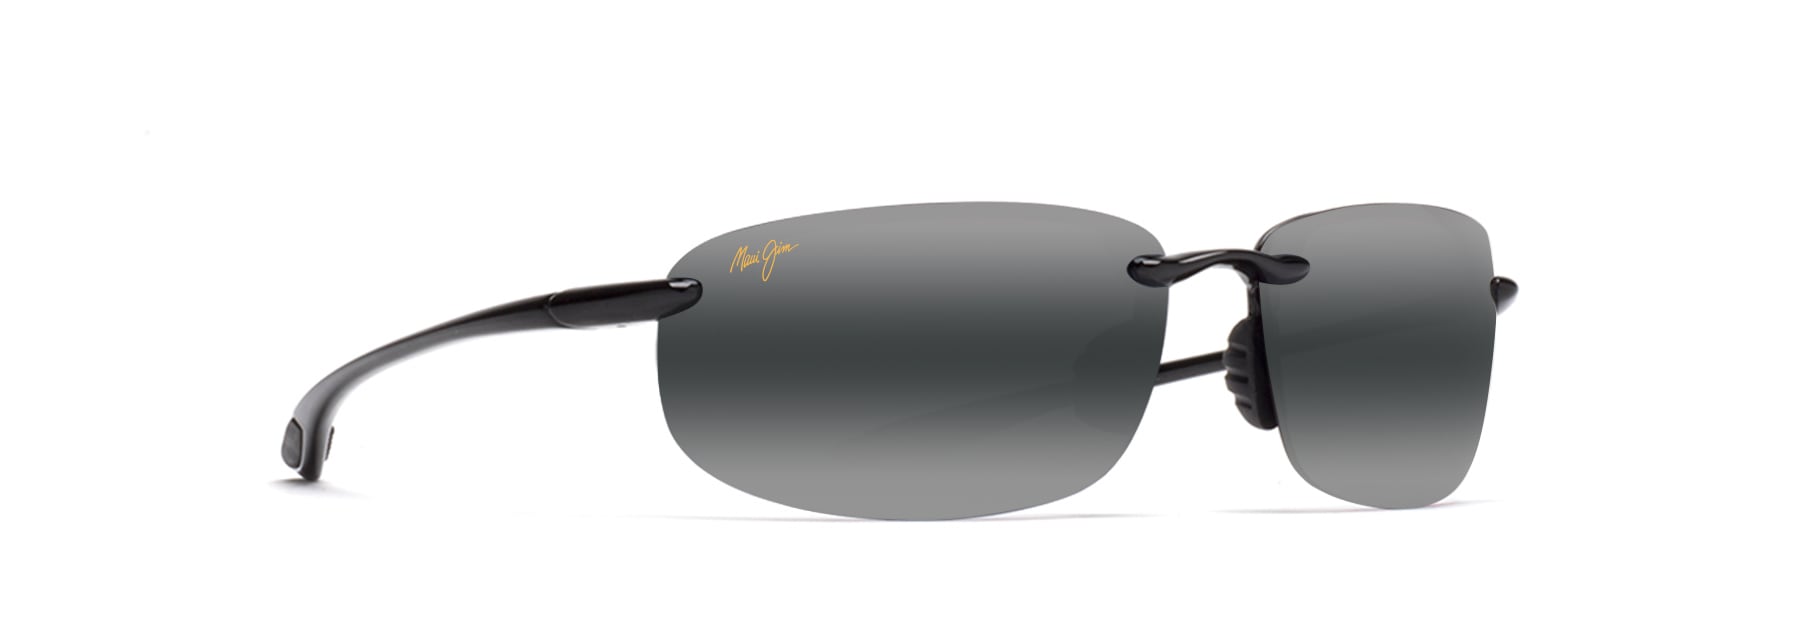 Apex Apex No Polarizadas Lentes de Repuesto para Maui Jim Kauai MJ305 Gafas de Sol 